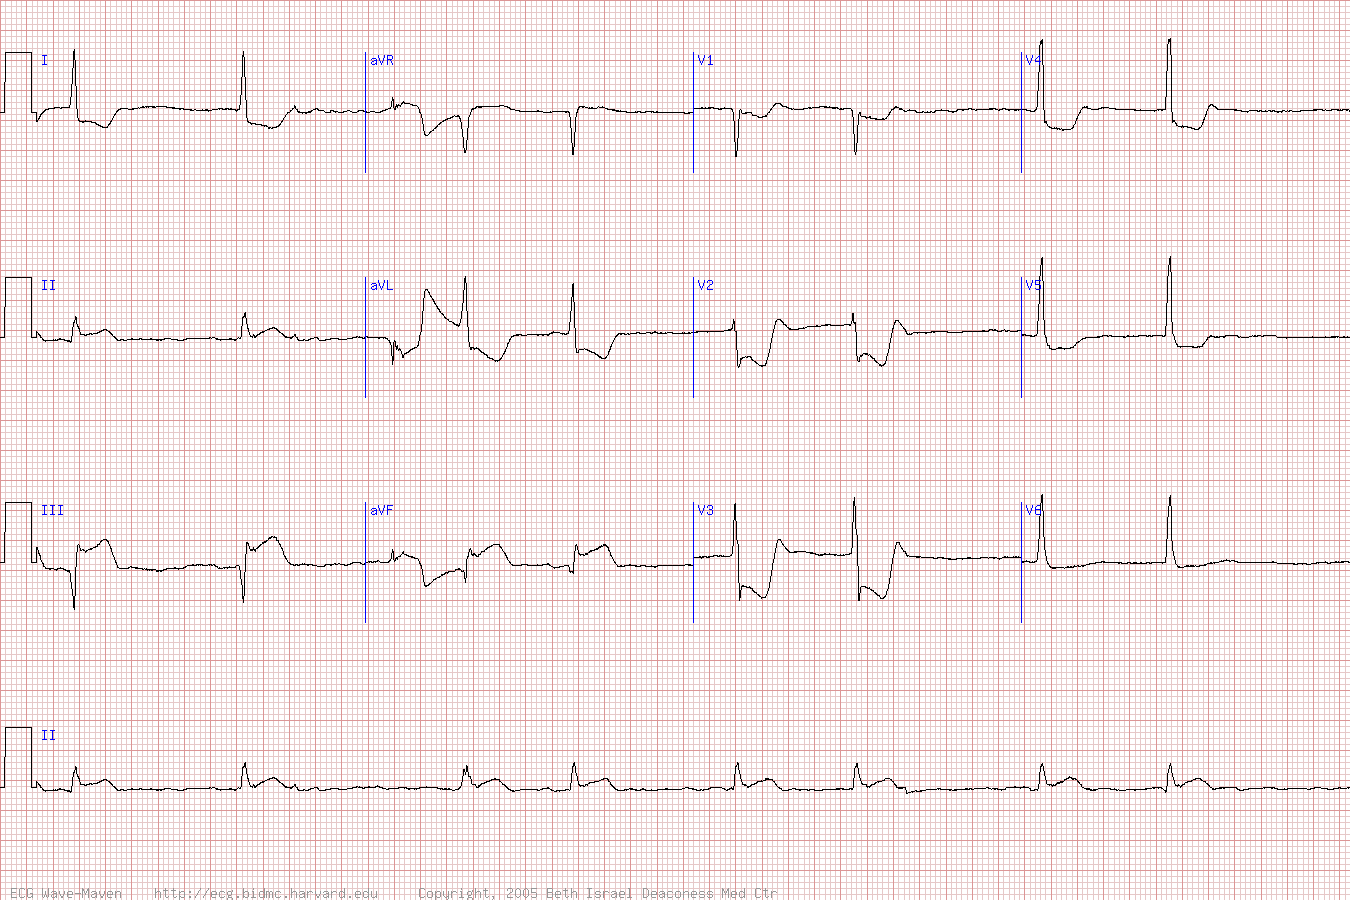 ЭКГ во время острой стадии инфаркта нижней и задней стенок (инфаркт миокарда с подъемом ST).